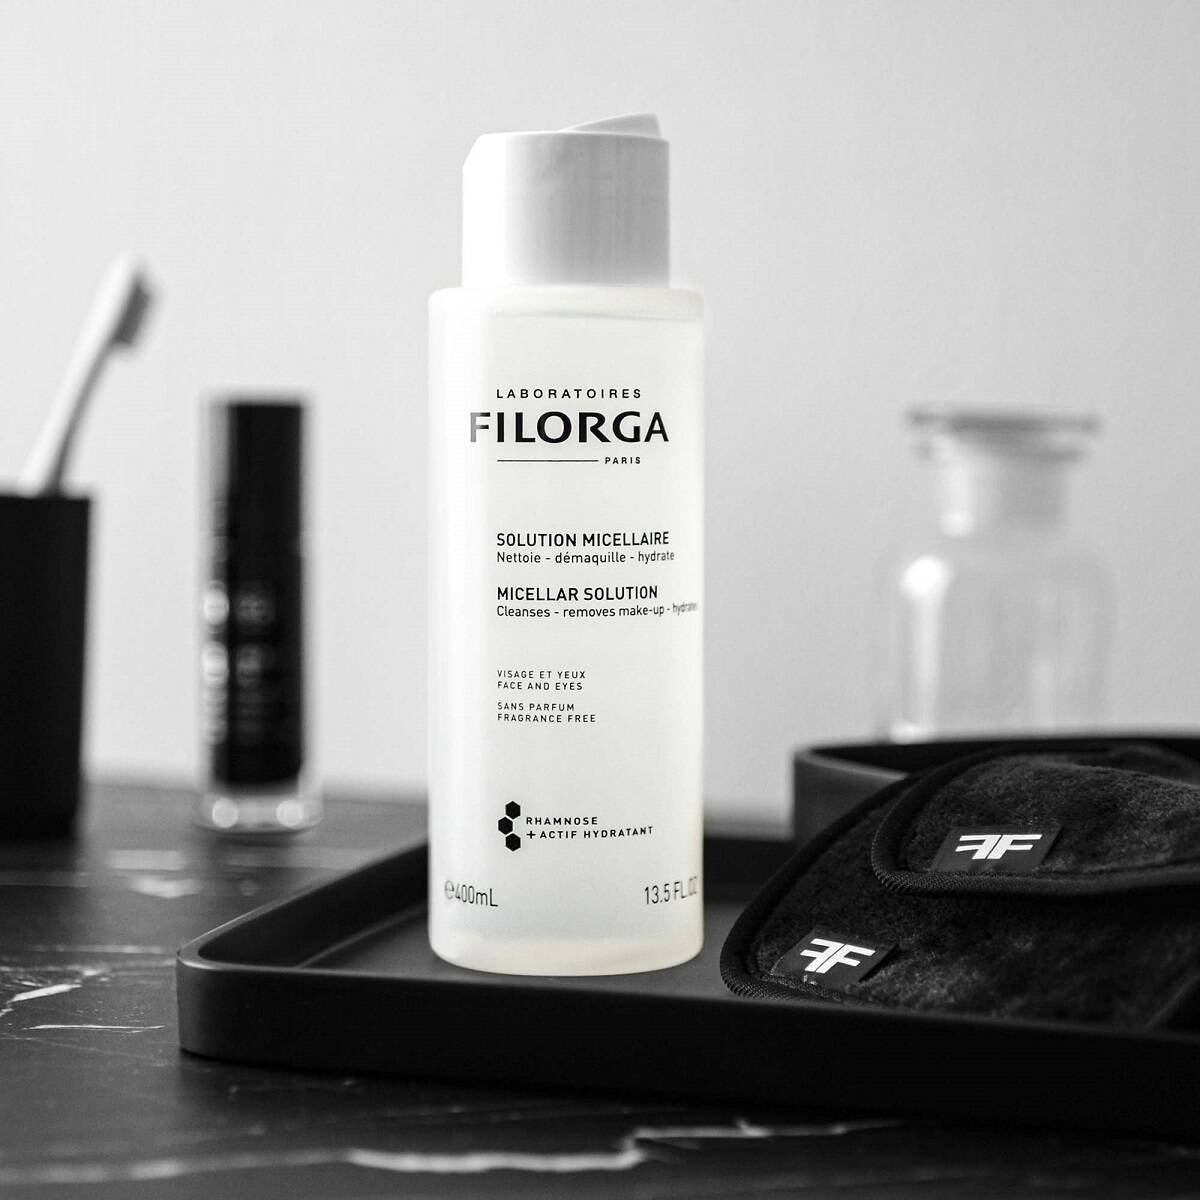 میسلار واتر آبرسان فیلورگا 400 میلی لیتری پاک کننده صورت و آرایش Laboratoires Filorga Paris hydrate Micellar Solution